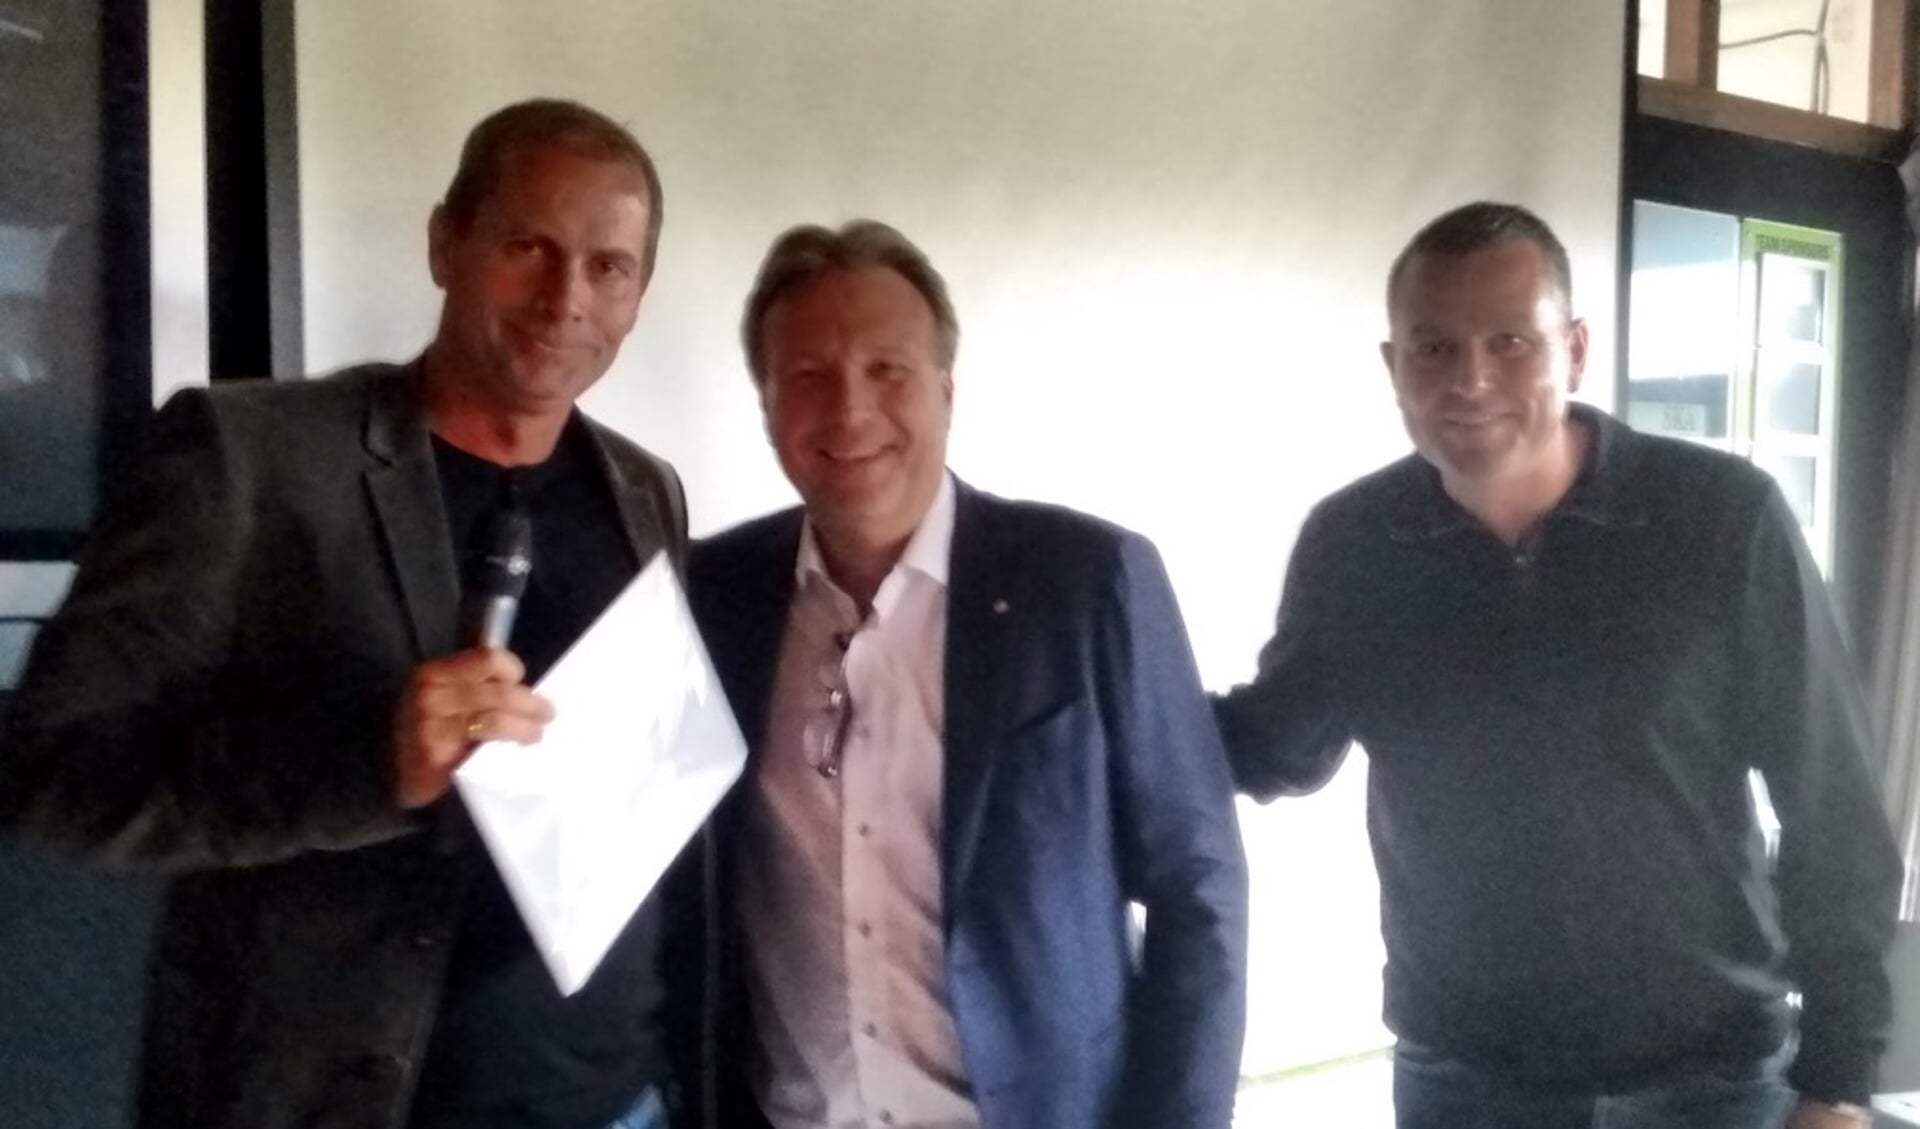 De overhandiging van de cheque door afgevaardigden van de Lionsclub Landsmeer aan de voorzitter van IVV. (Foto: aangeleverd)